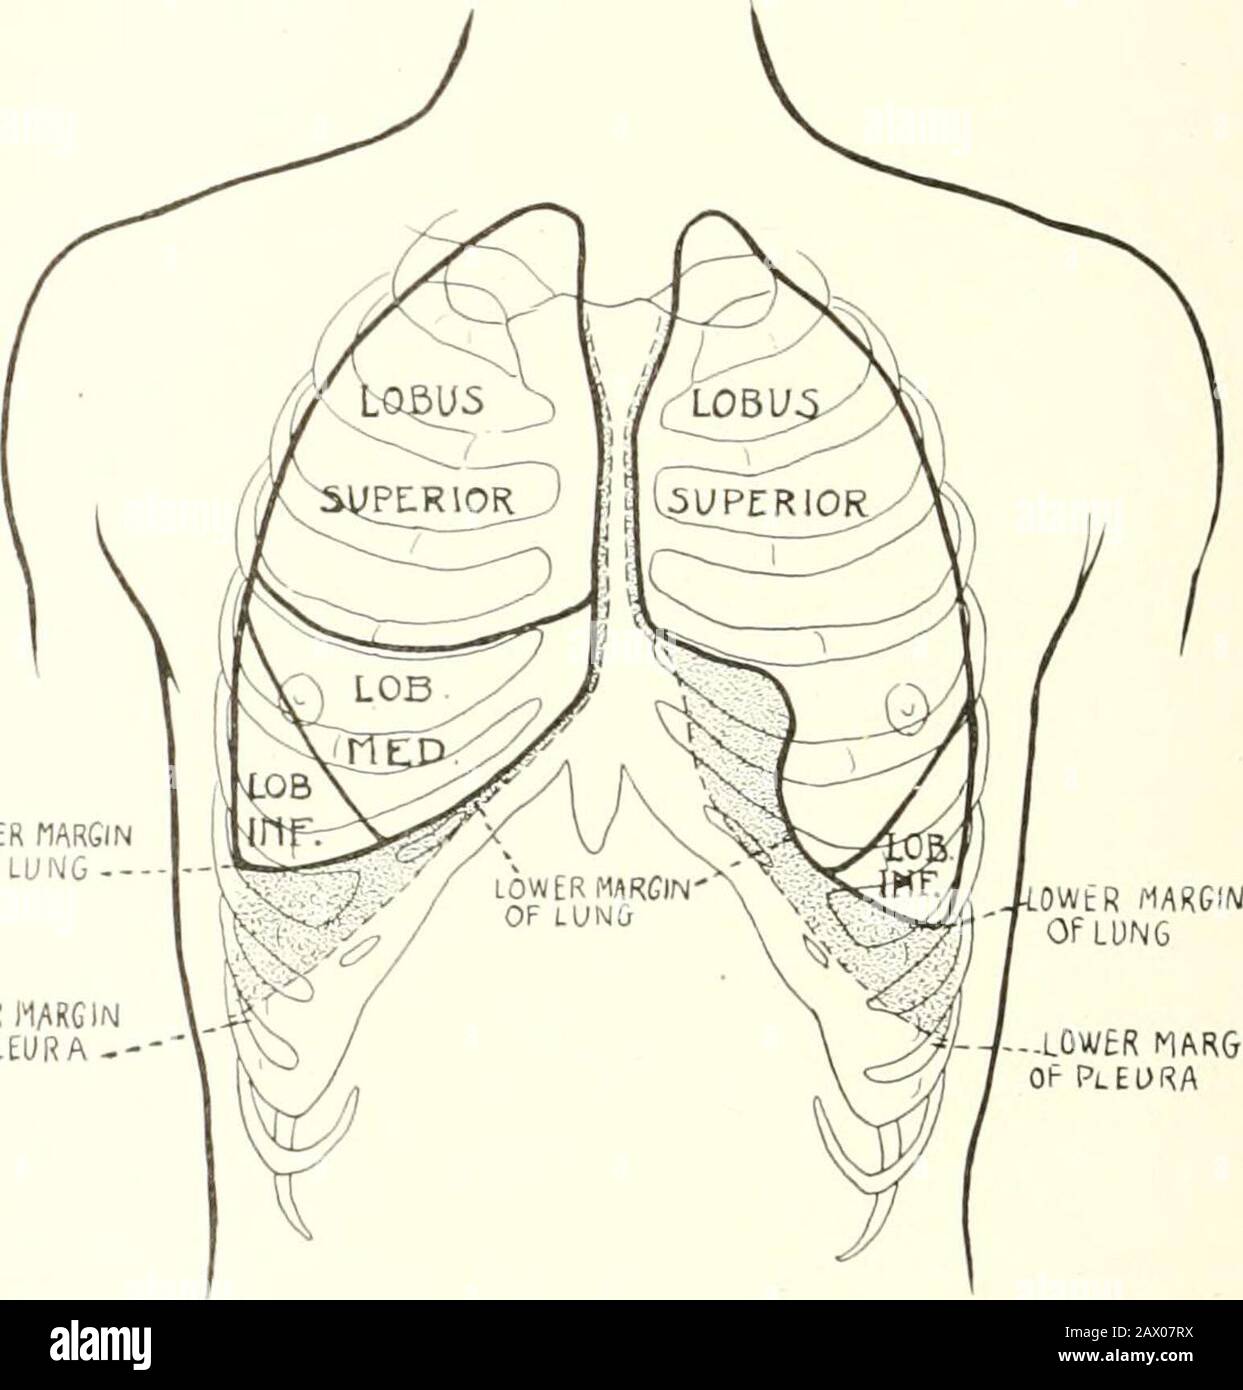 Tubercolosi clinica . lei. L'infezione bronchogenica, per la mostparte, segue lo stesso decorso, ma può, come la in-fezione ematogena, anche passare da un lobo all'altro, o da un polmone all'altro. Le divisioni tra i lobi sono mostrate nelle Figg. 51, 52, e 53.Clinicamente, la divisione tra il lobo superiore e quello inferiore può essere marcata in modo loughly posizionando la mano sulla spalla opposta, che getta il punto inferiore della scapola verso la teaxilla, e tracciando una linea lungo il suo bordo interno. Questa linea quandoprolungata, come in Fig. 57, pag. 324, indica approssimativamente la divisione tra i lobi. Foto Stock